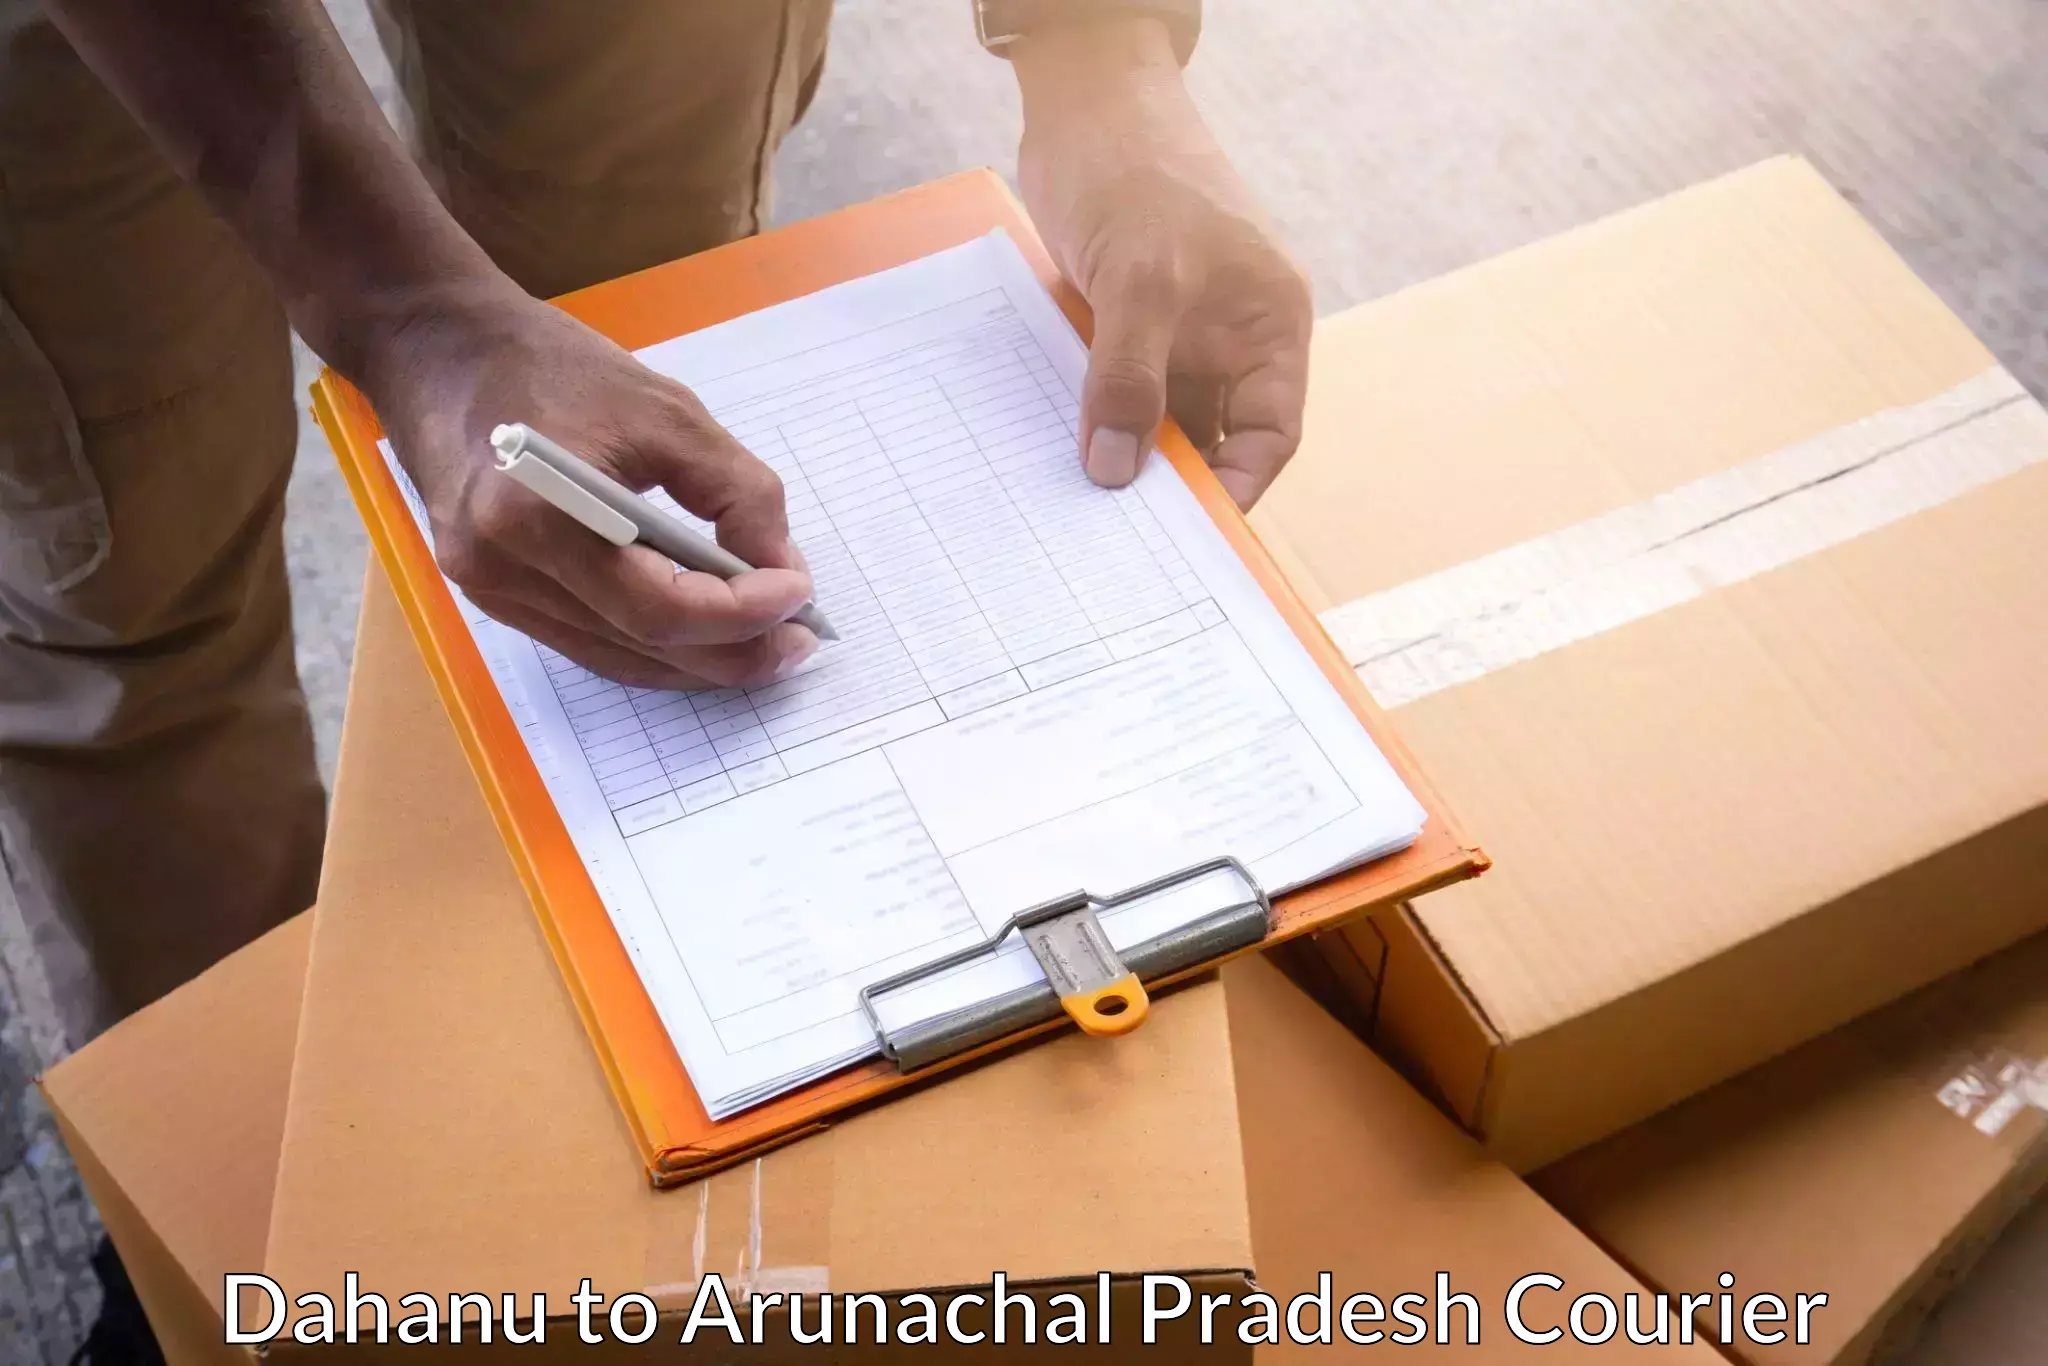 Multi-service courier options Dahanu to Arunachal Pradesh